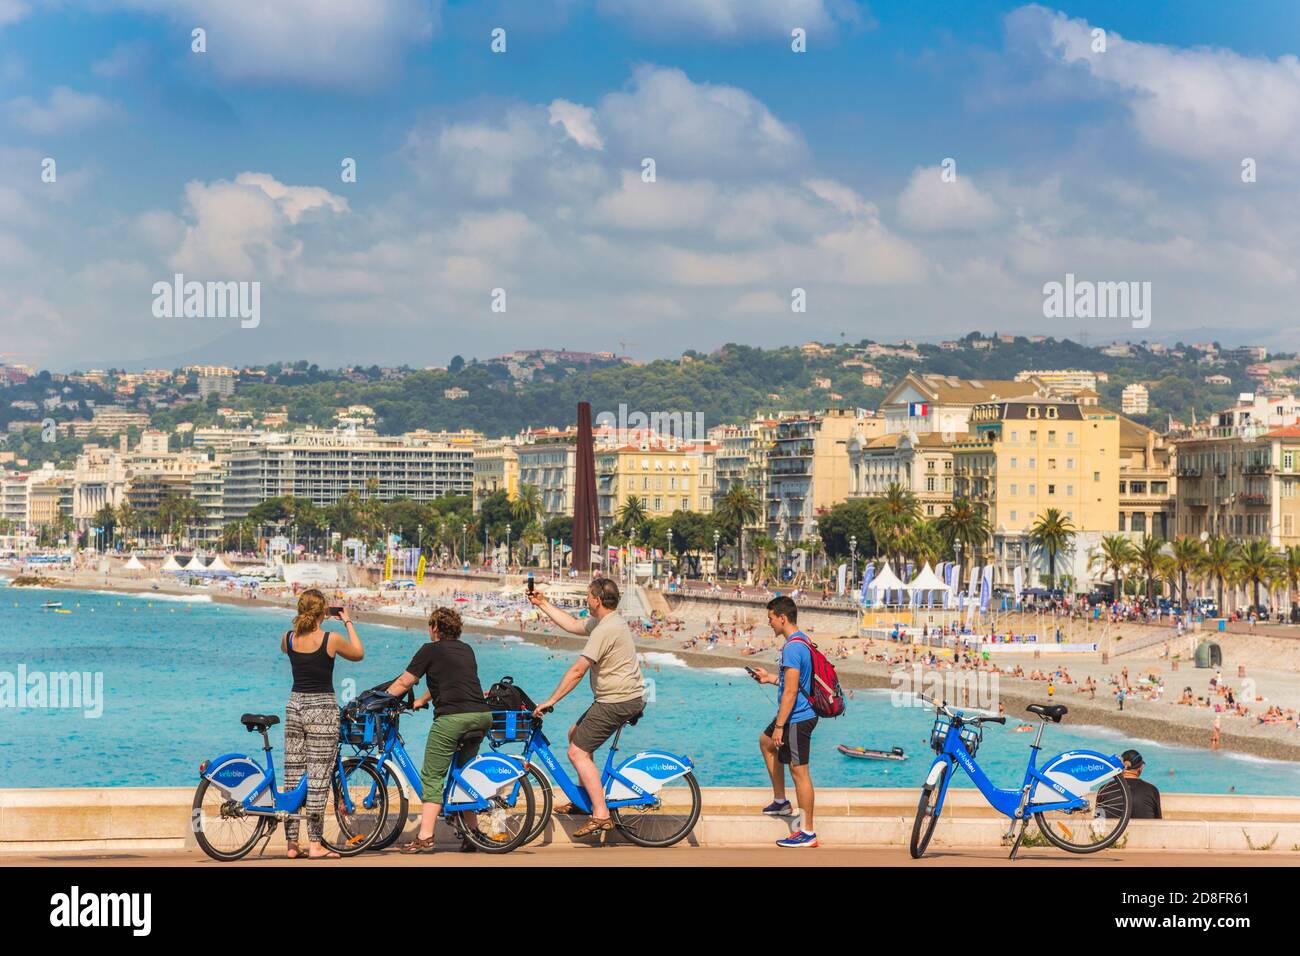 Nizza, Cote d'Azur, Französische Riviera, Frankreich. Fahrradfahrer fotografieren mit ihren Smartphones den Strand vor der Promenade von Nizza. Stockfoto